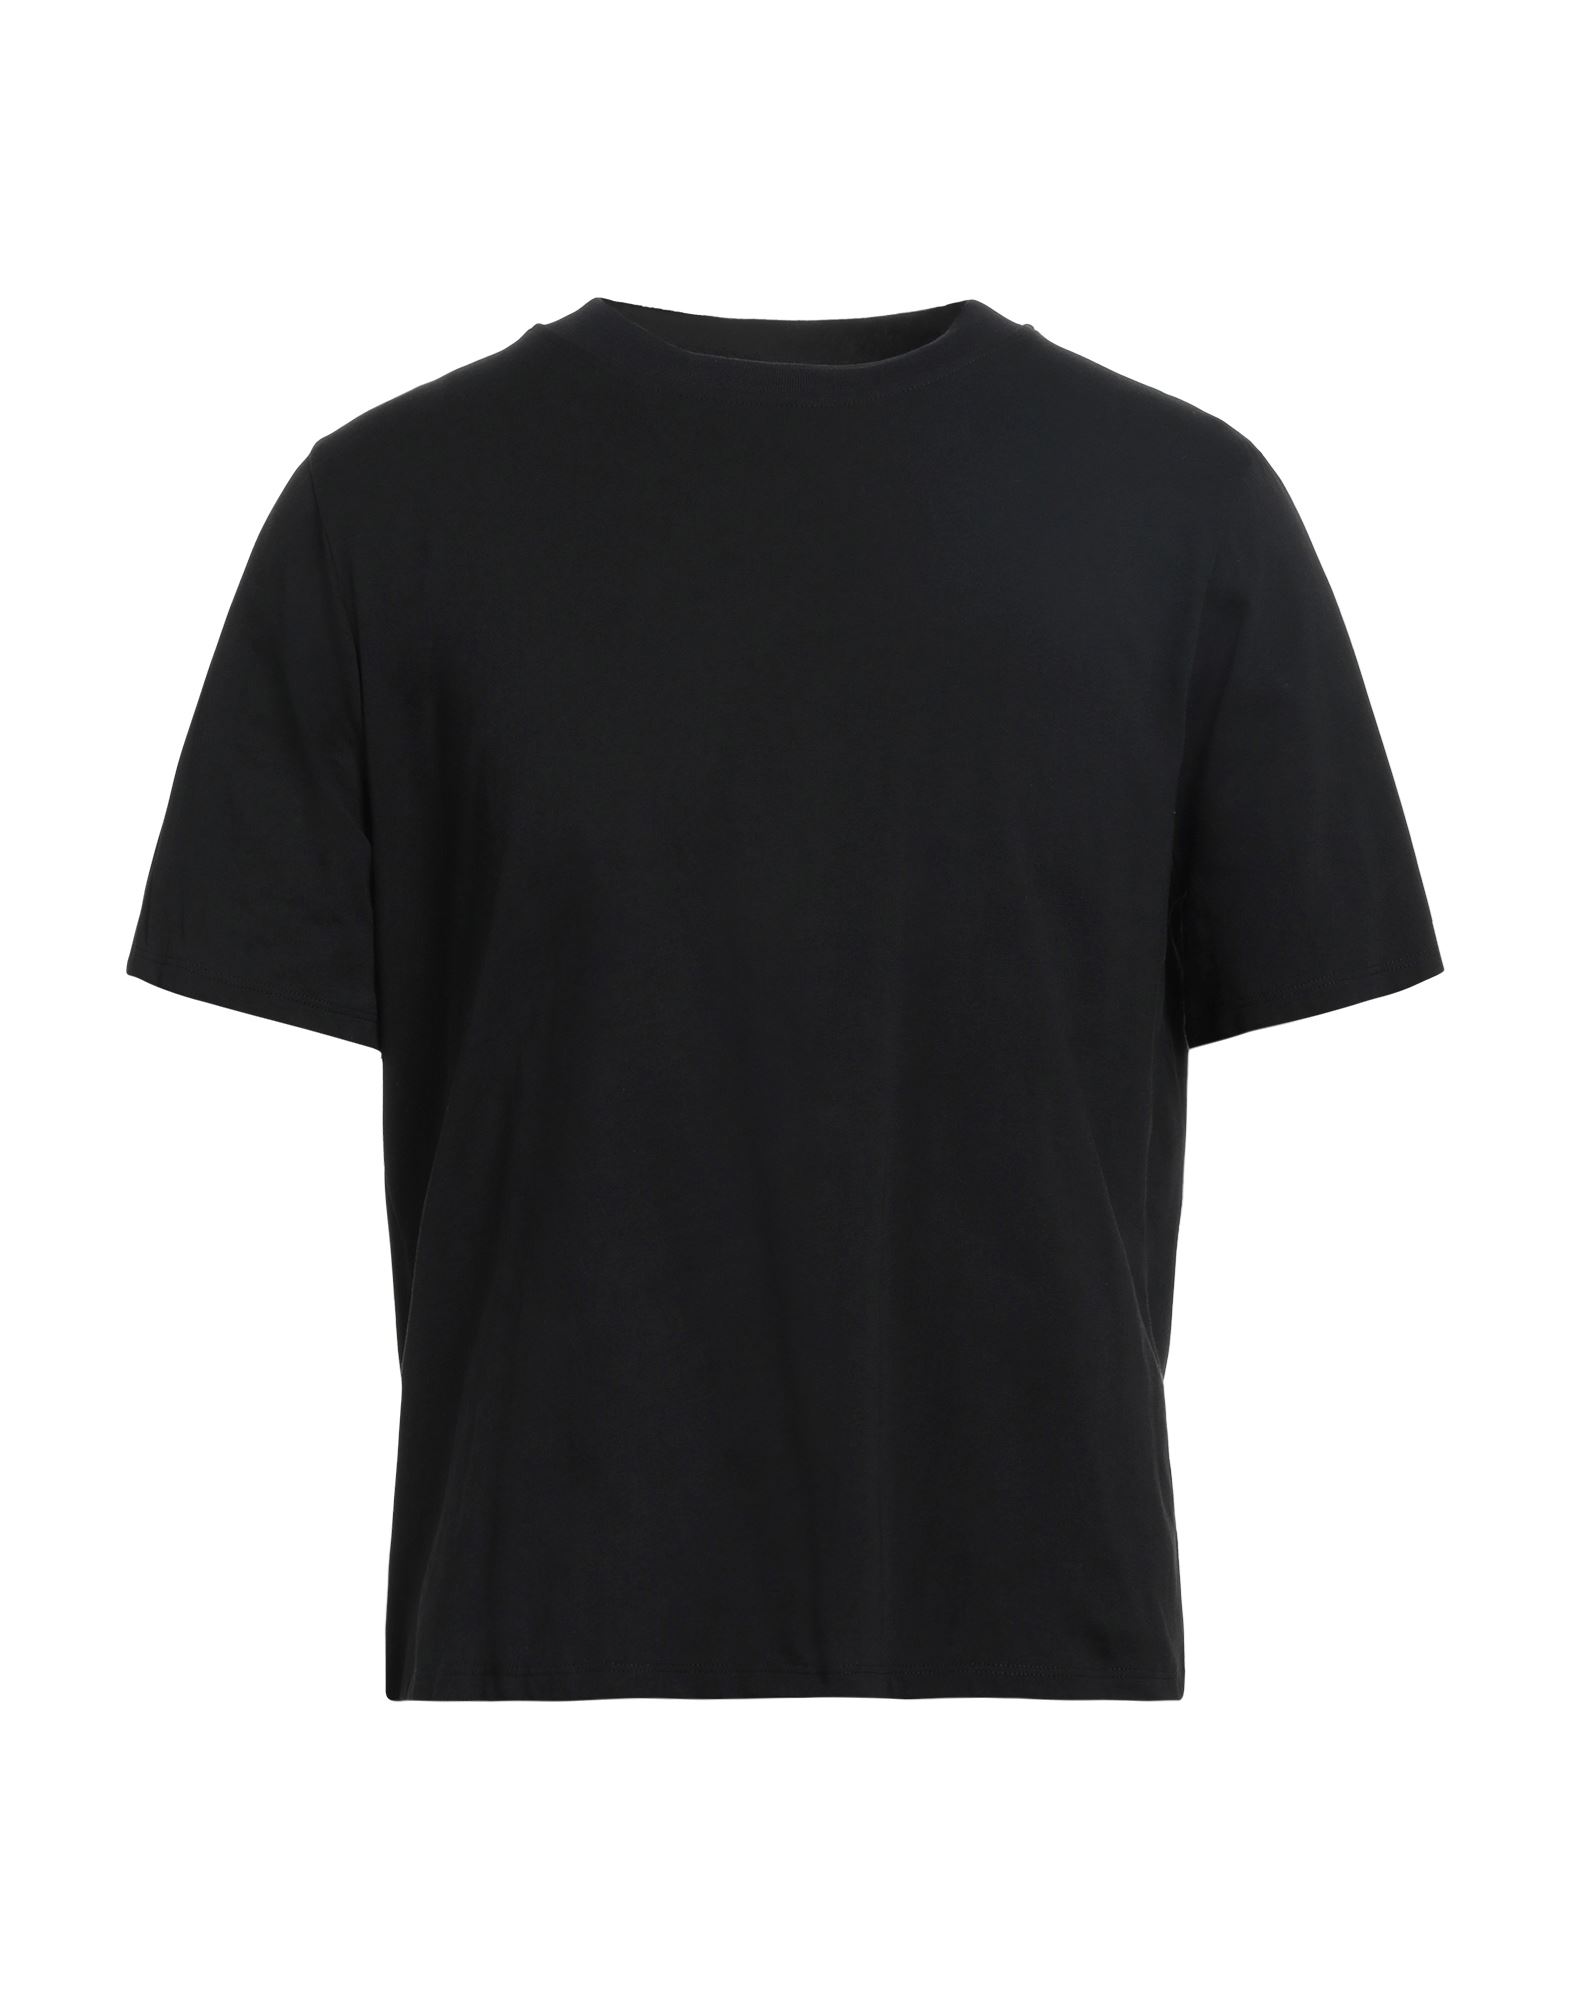 Malloni T-shirts In Black